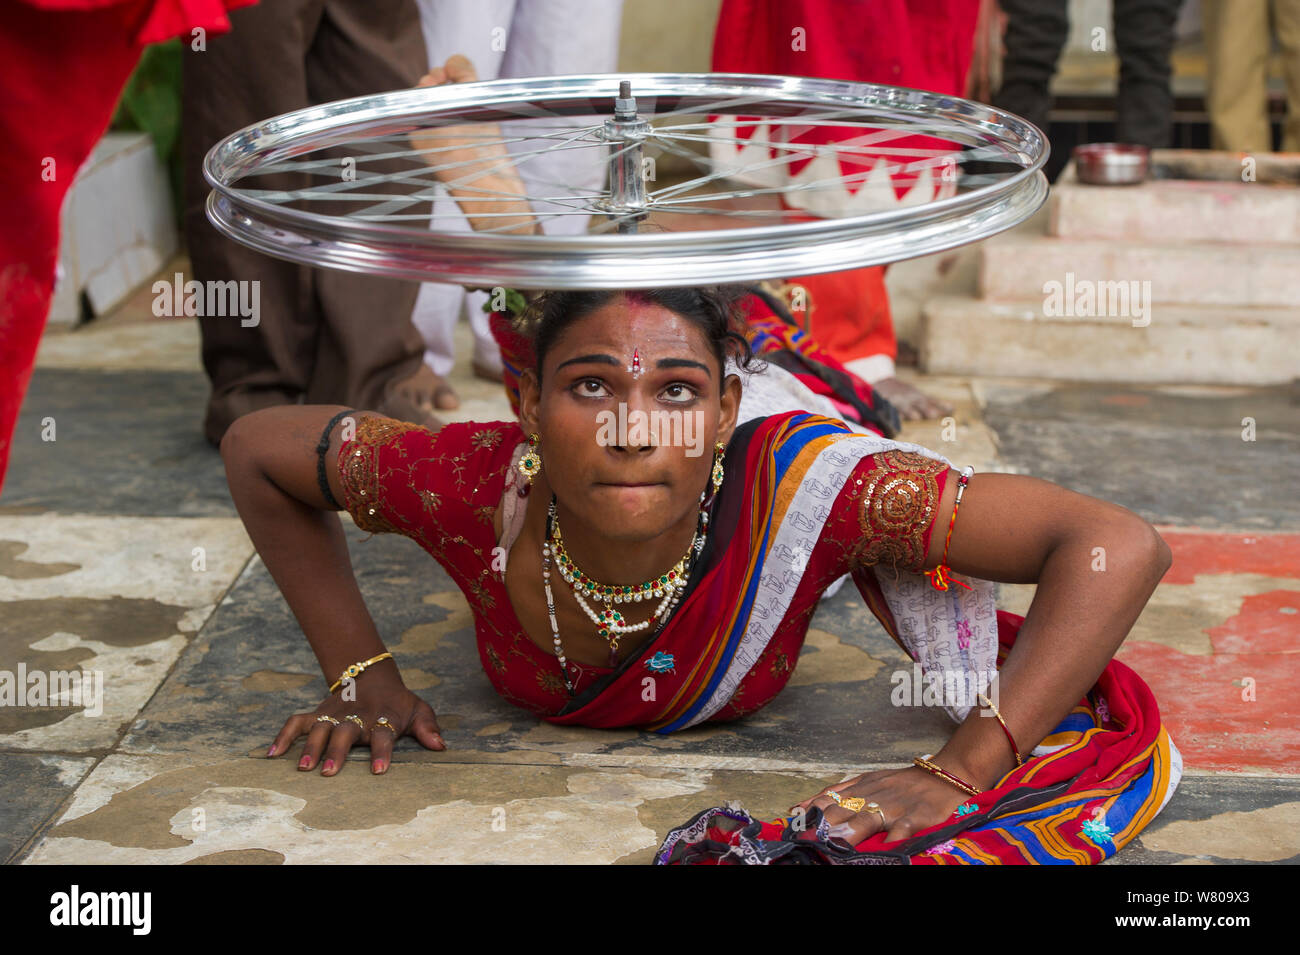 Ejecutante Hirja, equilibrado de ruedas de bicicleta en cabeza, Hijra son personas transgénero, legalmente reconocidas como un tercer género en la India. En Uttar Pradesh, India, octubre de 2014. Foto de stock